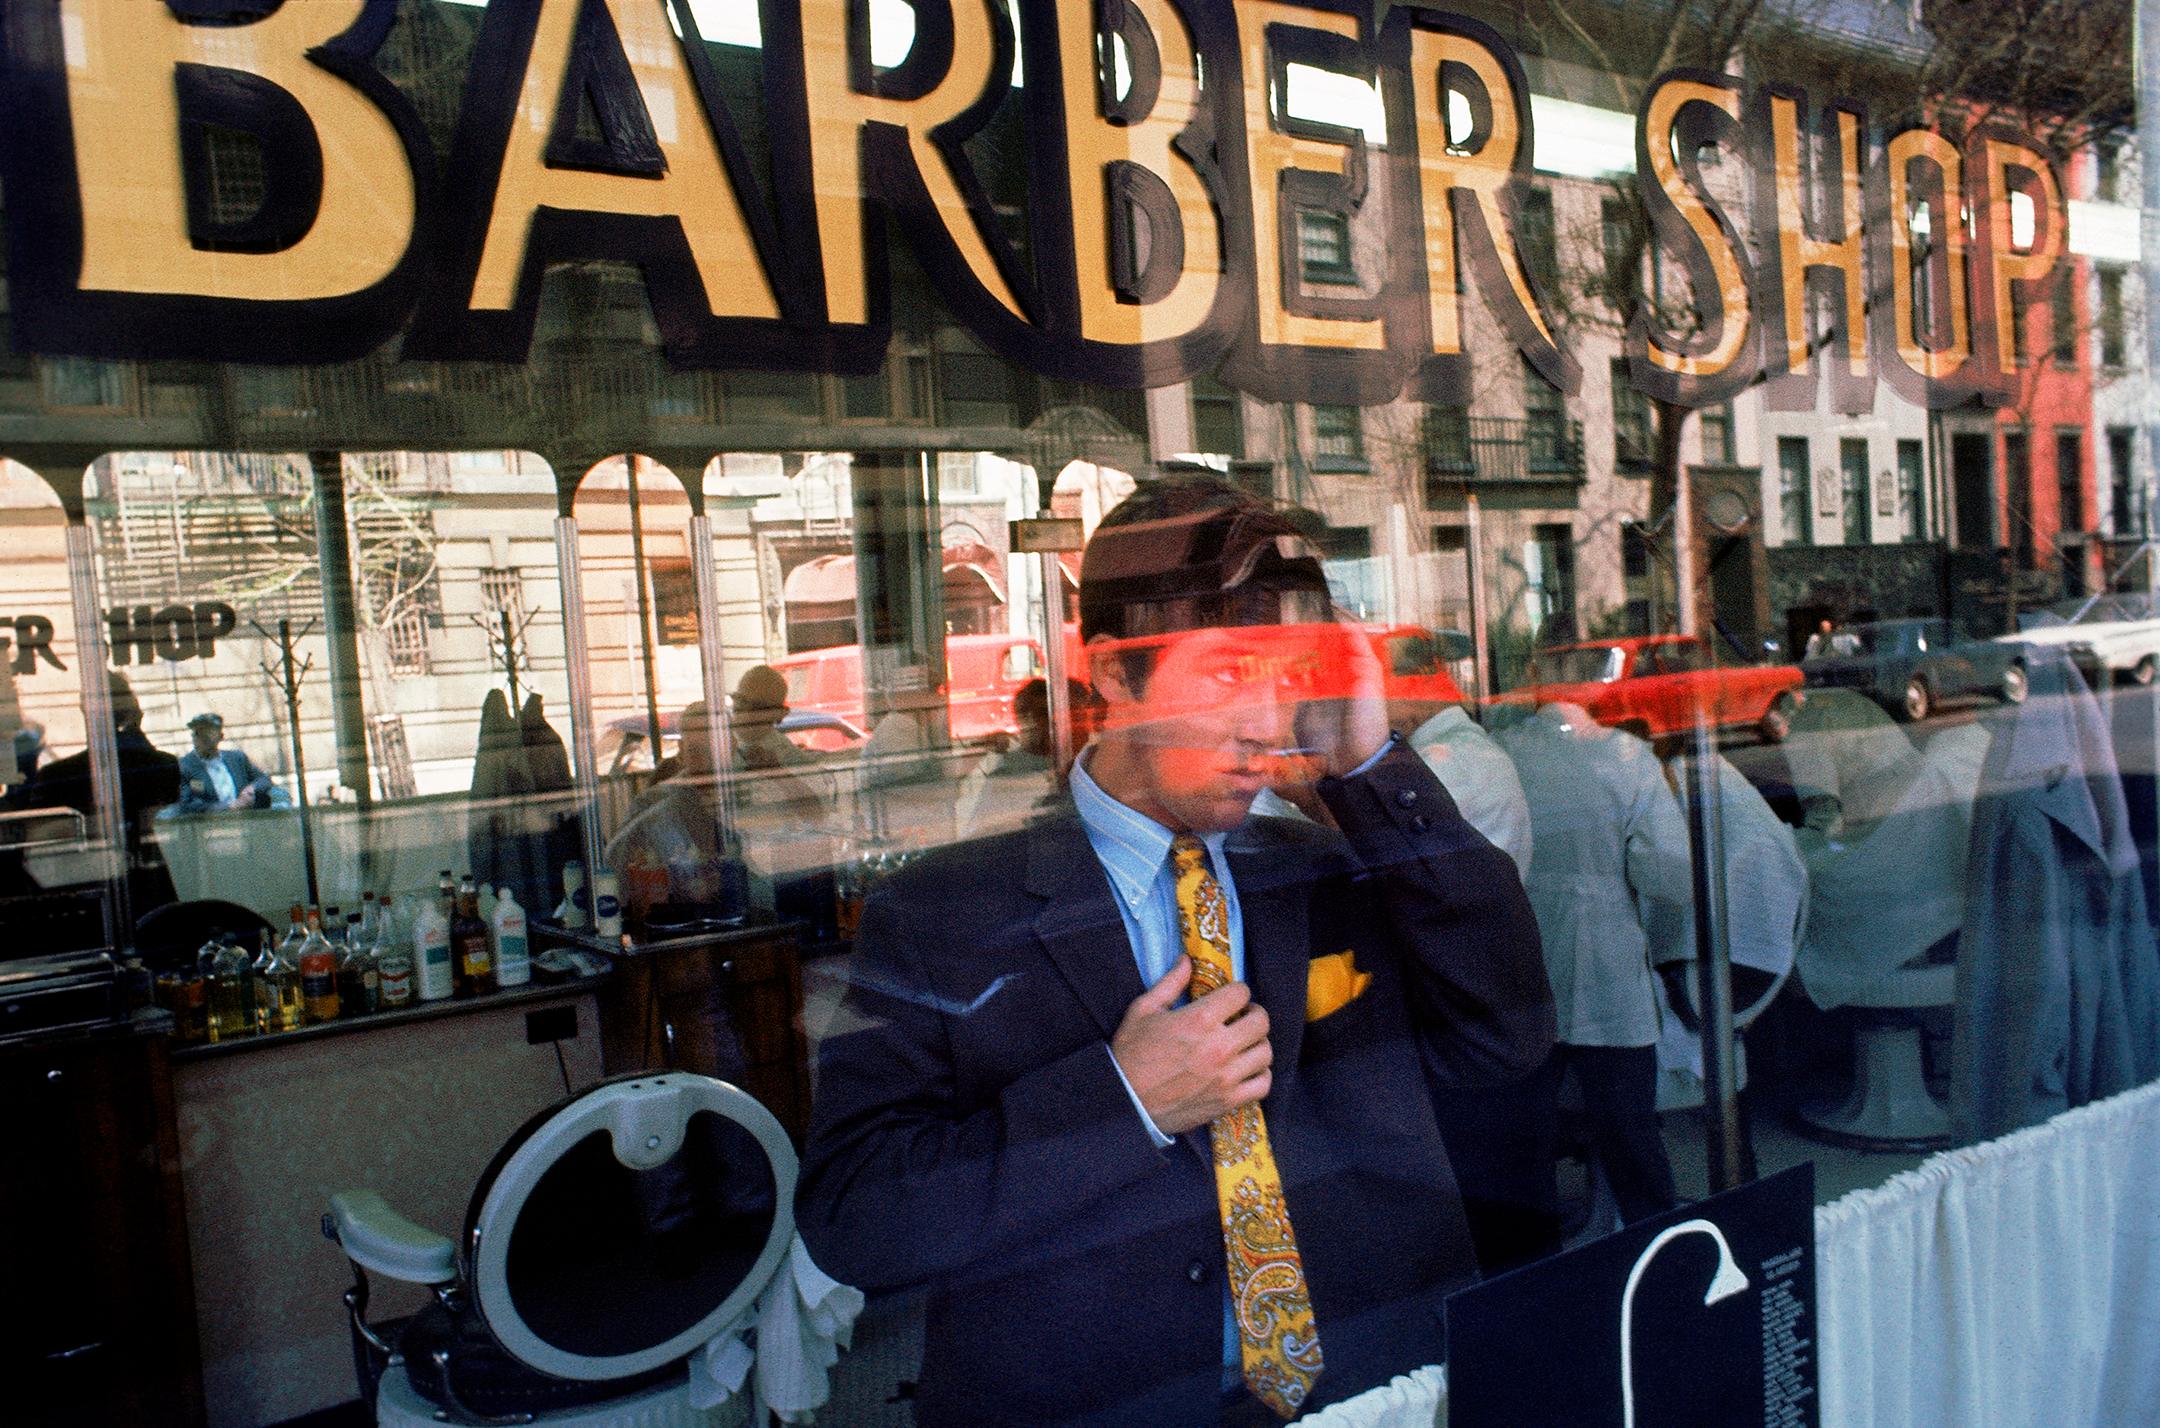 Barber Shop Reflection